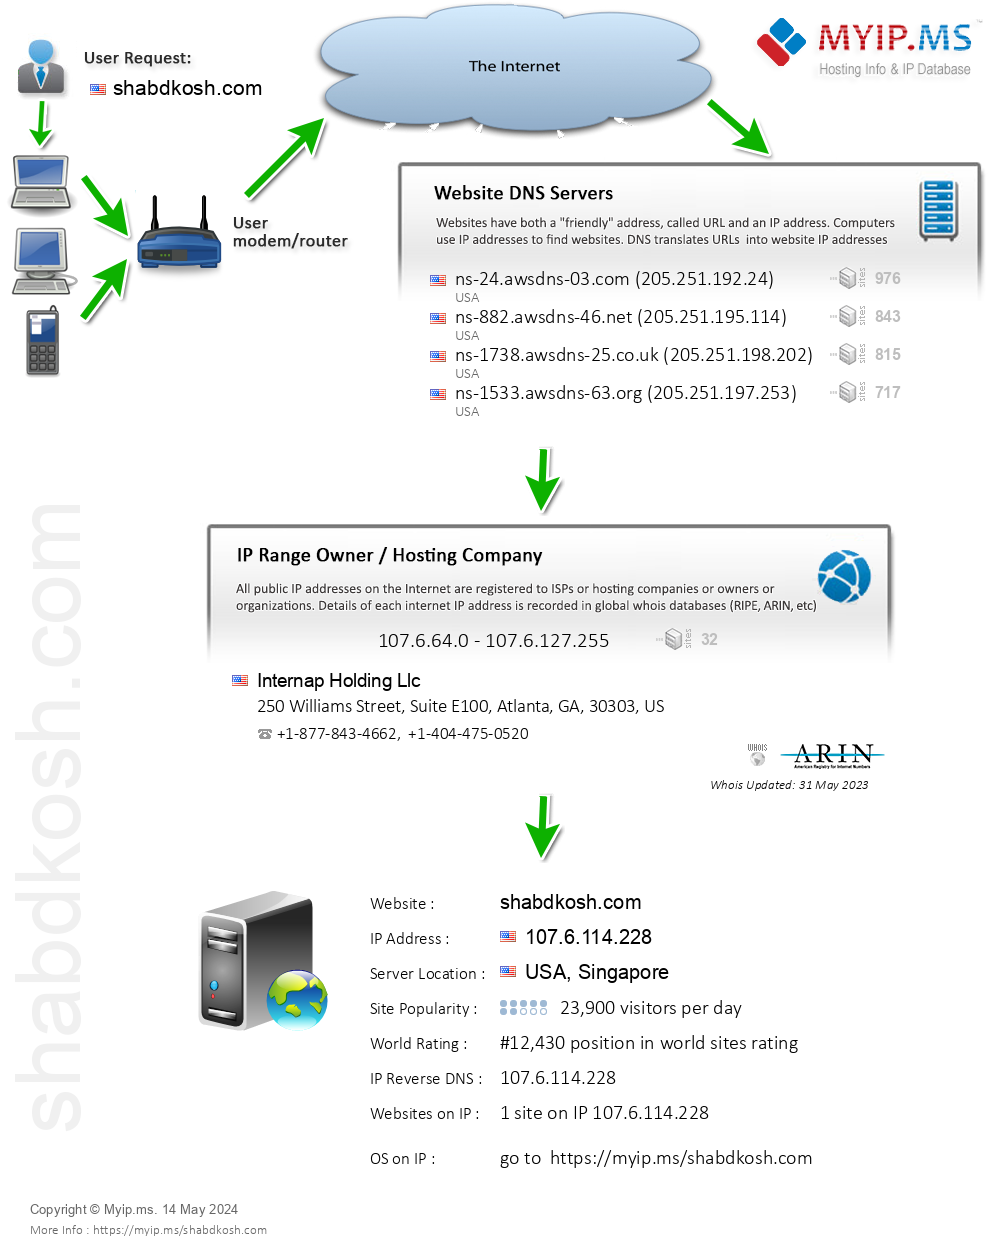 Shabdkosh.com - Website Hosting Visual IP Diagram